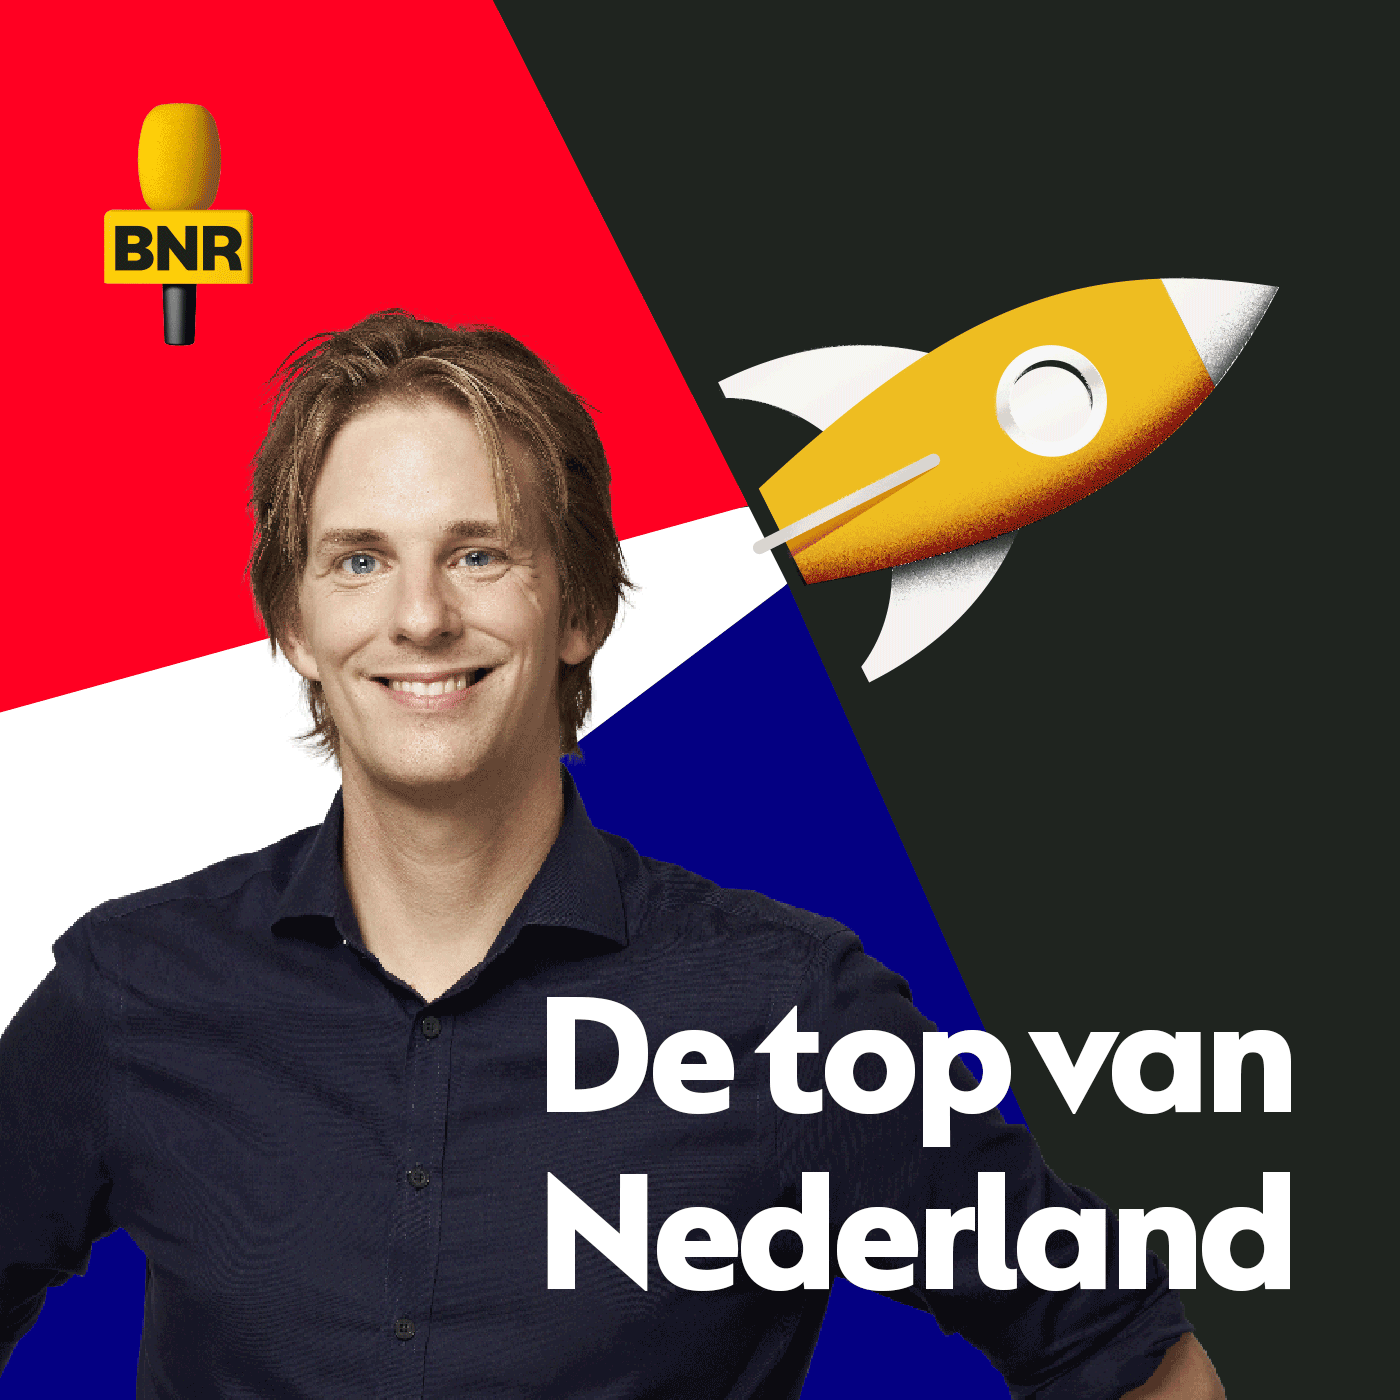 De Top van NL | Moet NDL met een nieuwe strategie komen om het imago van de logistieke sector op te poetsen?